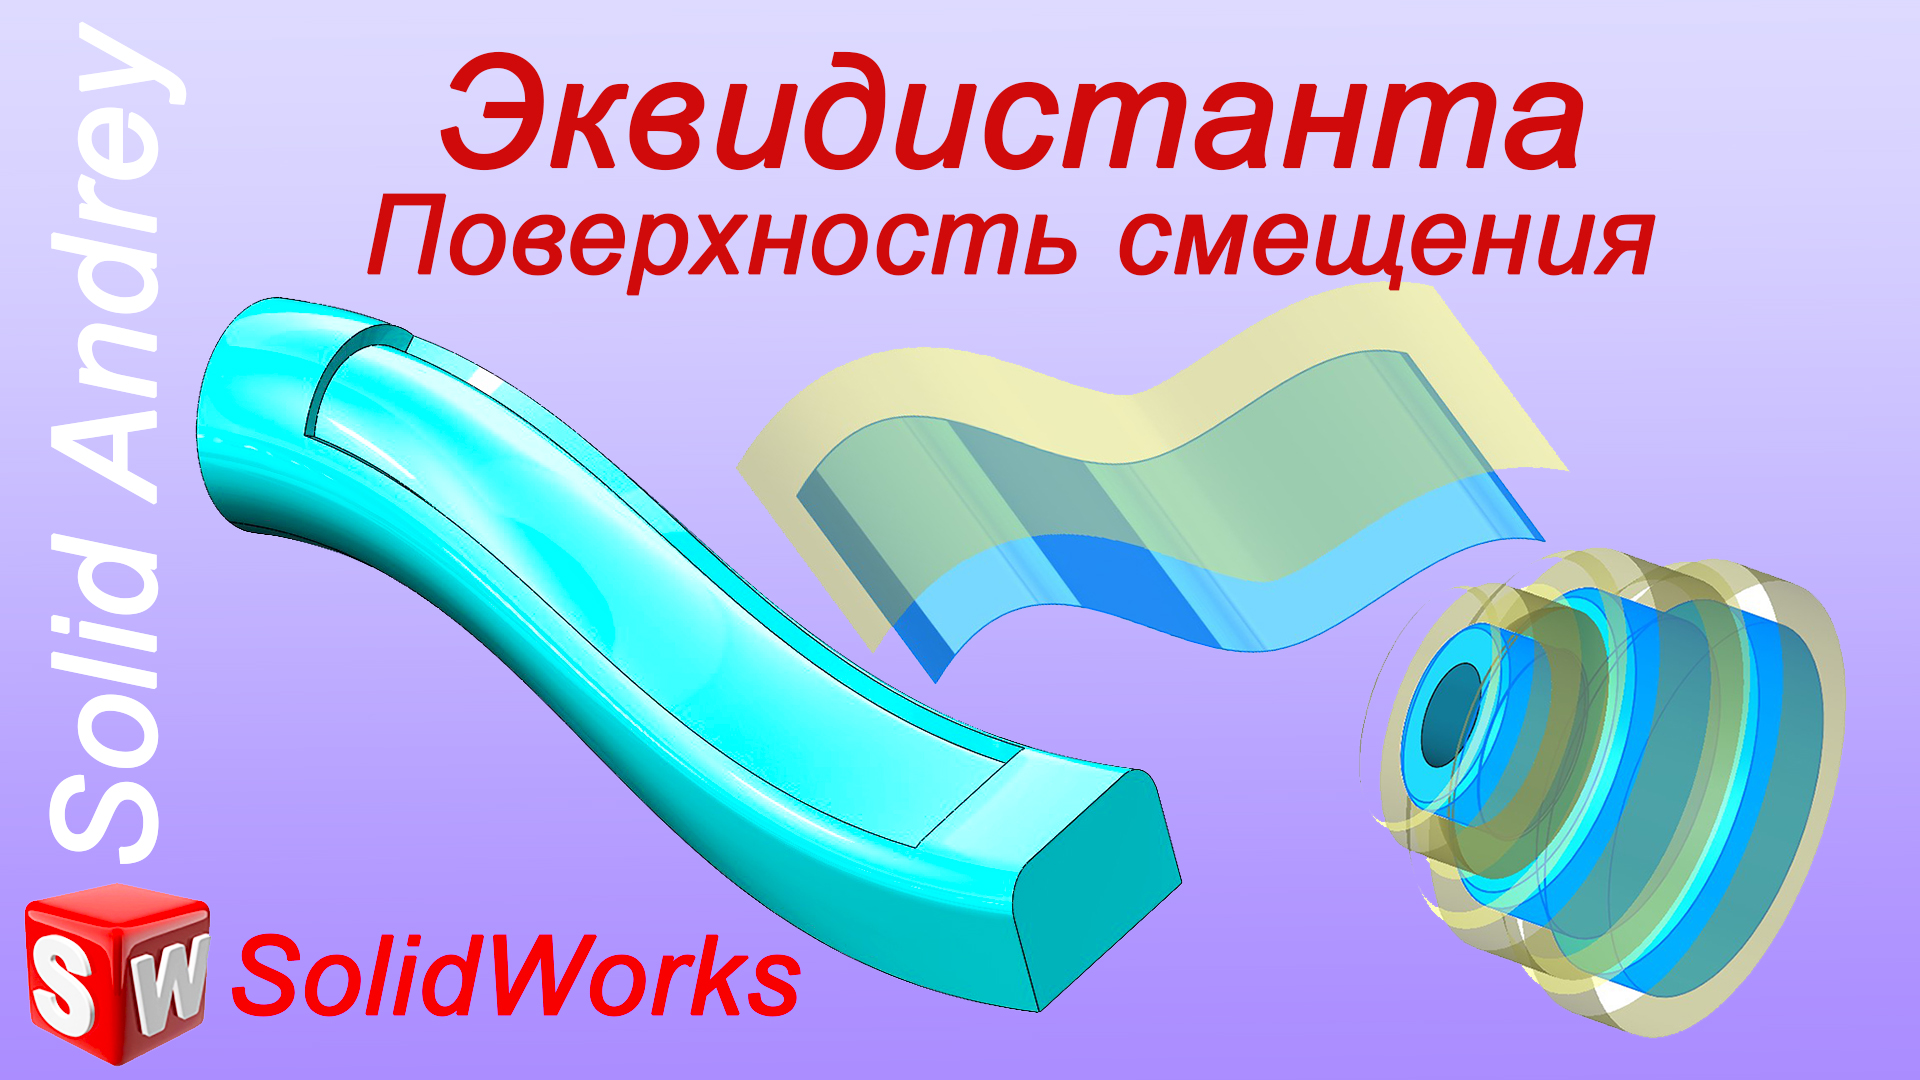 SolidWorks. Инструмент Эквидистанта (Поверхность смещения). Панель Поверхности